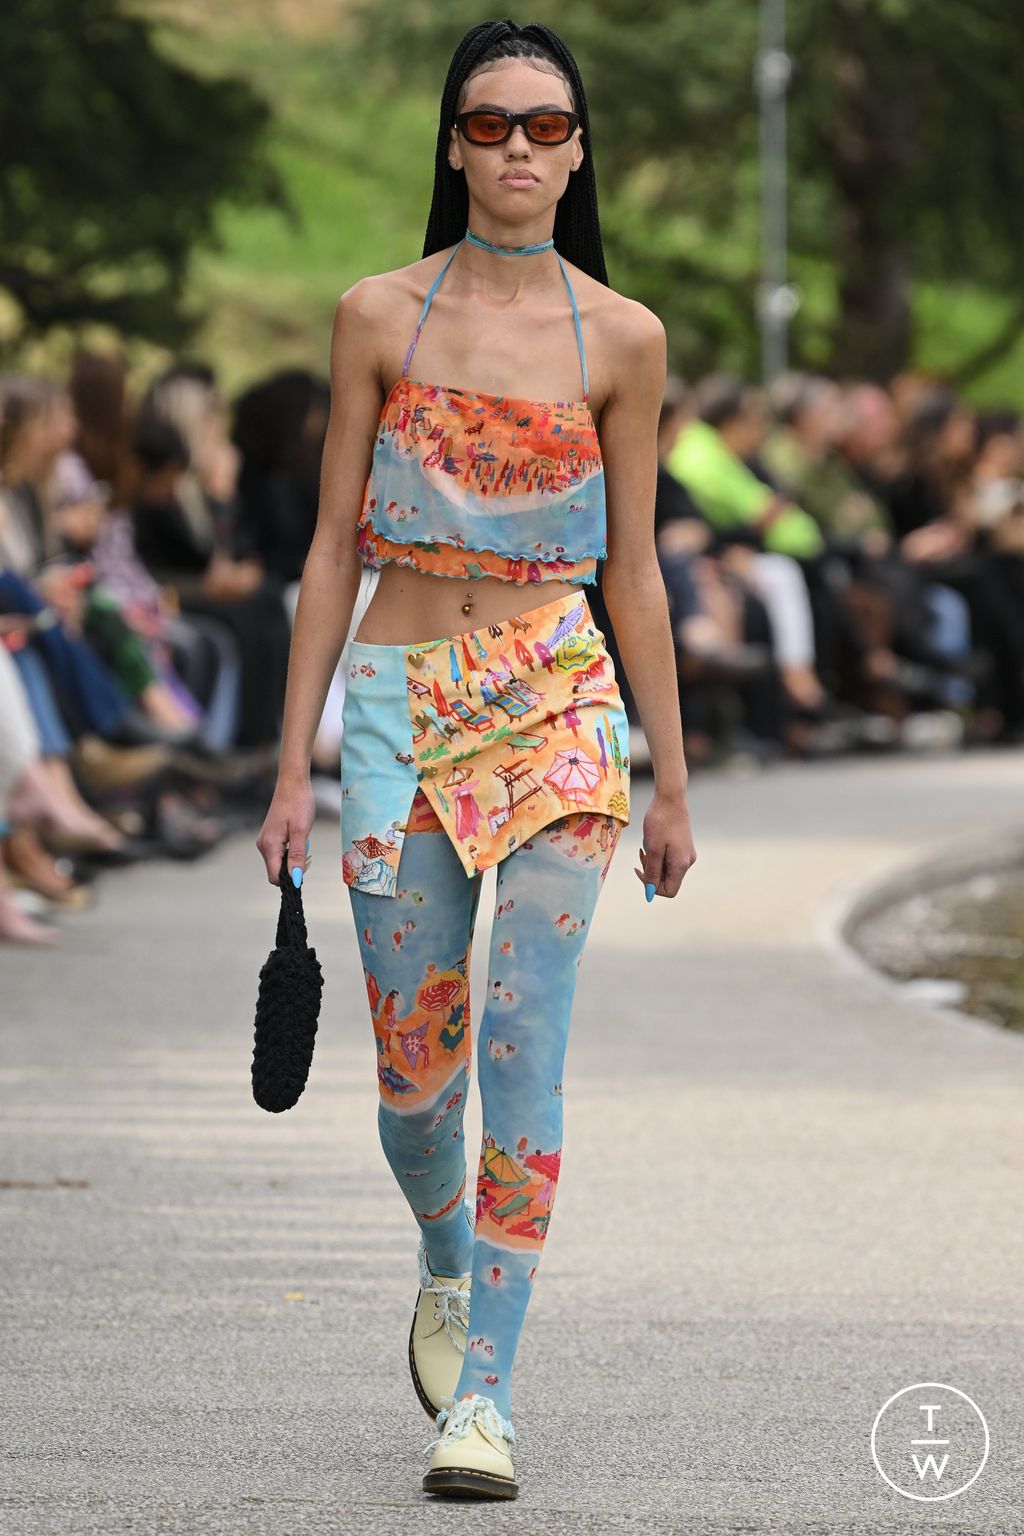 Louis Vuitton SS23 menswear #13 - Tagwalk: The Fashion Search Engine